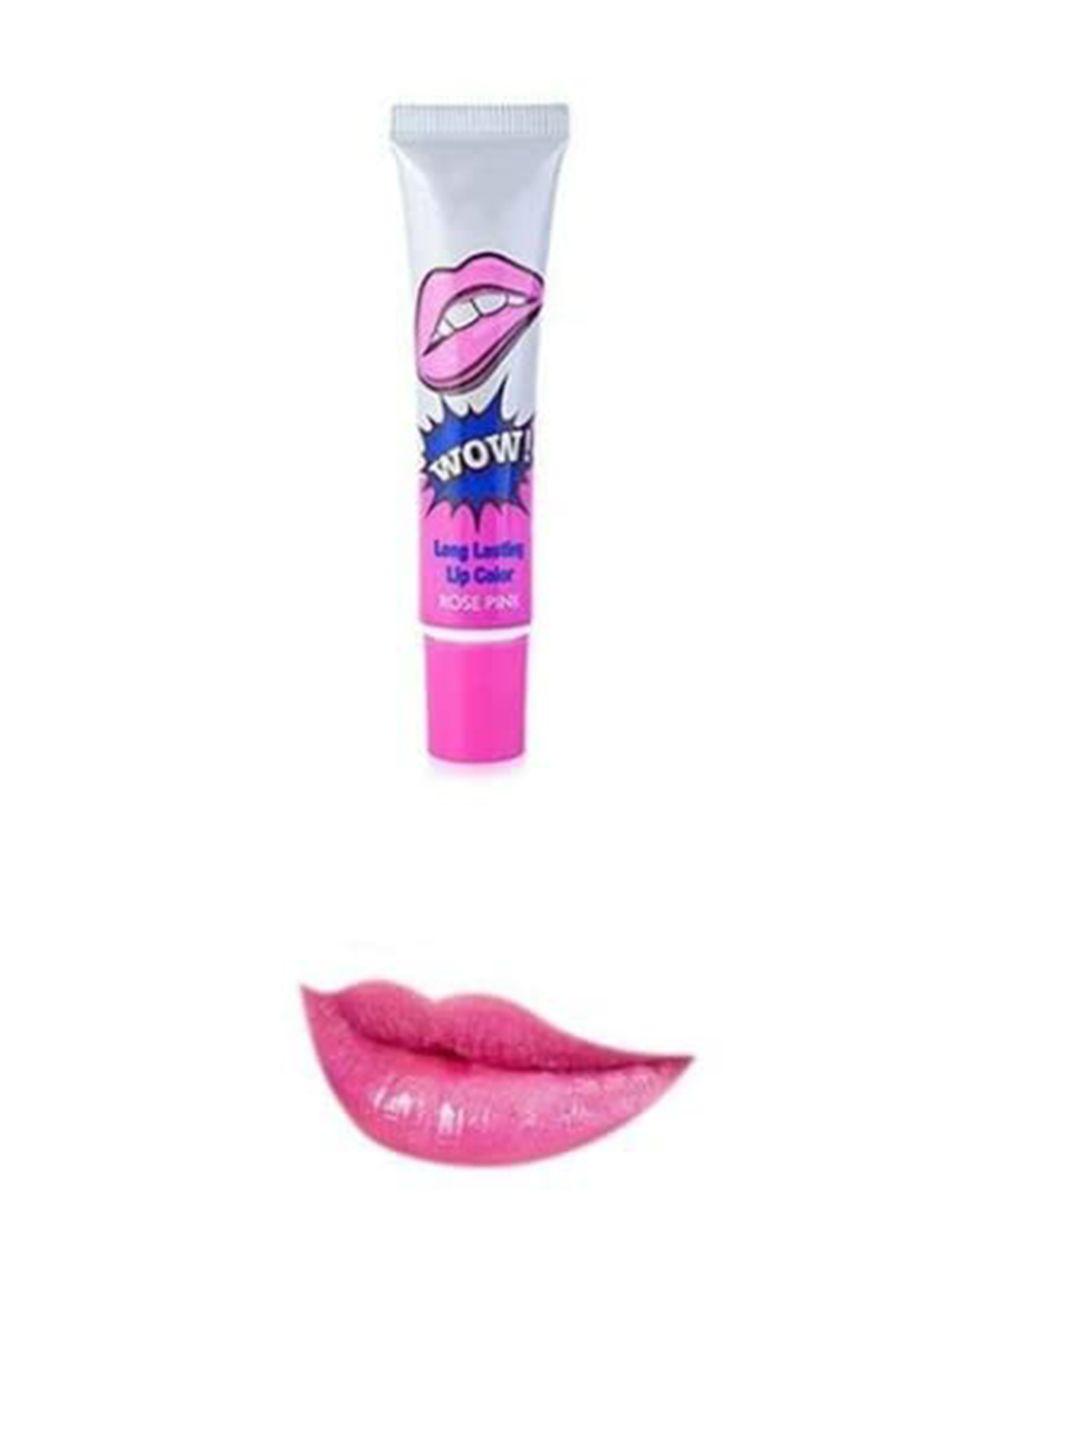 adbeni long lasting peel off lip color - 15g - rose pink